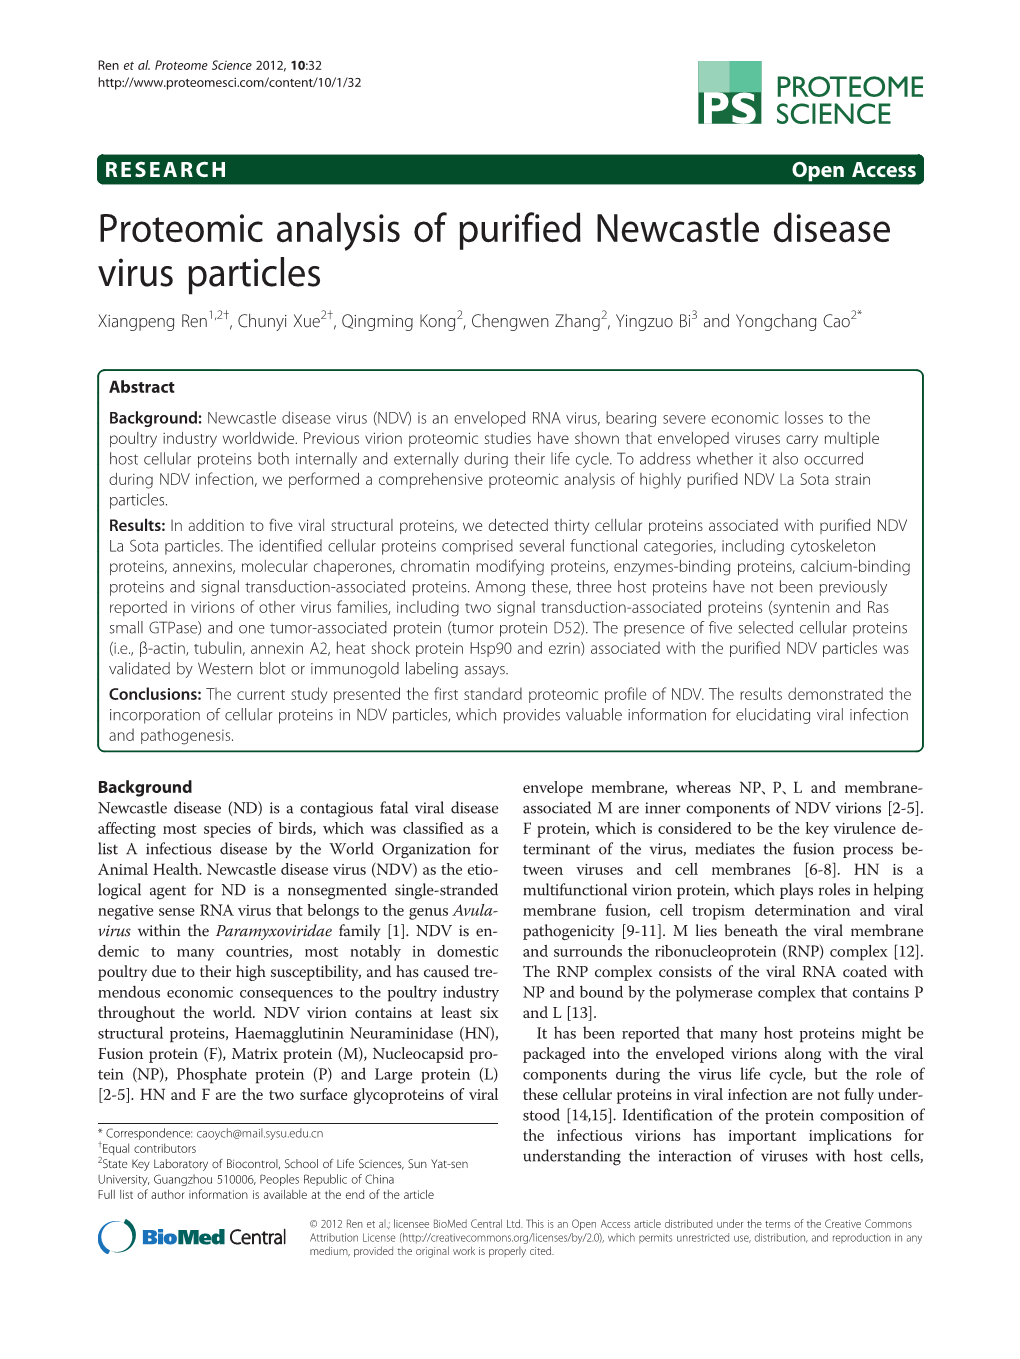 Proteomic Analysis of Purified Newcastle Disease Virus Particles Xiangpeng Ren1,2†, Chunyi Xue2†, Qingming Kong2, Chengwen Zhang2, Yingzuo Bi3 and Yongchang Cao2*